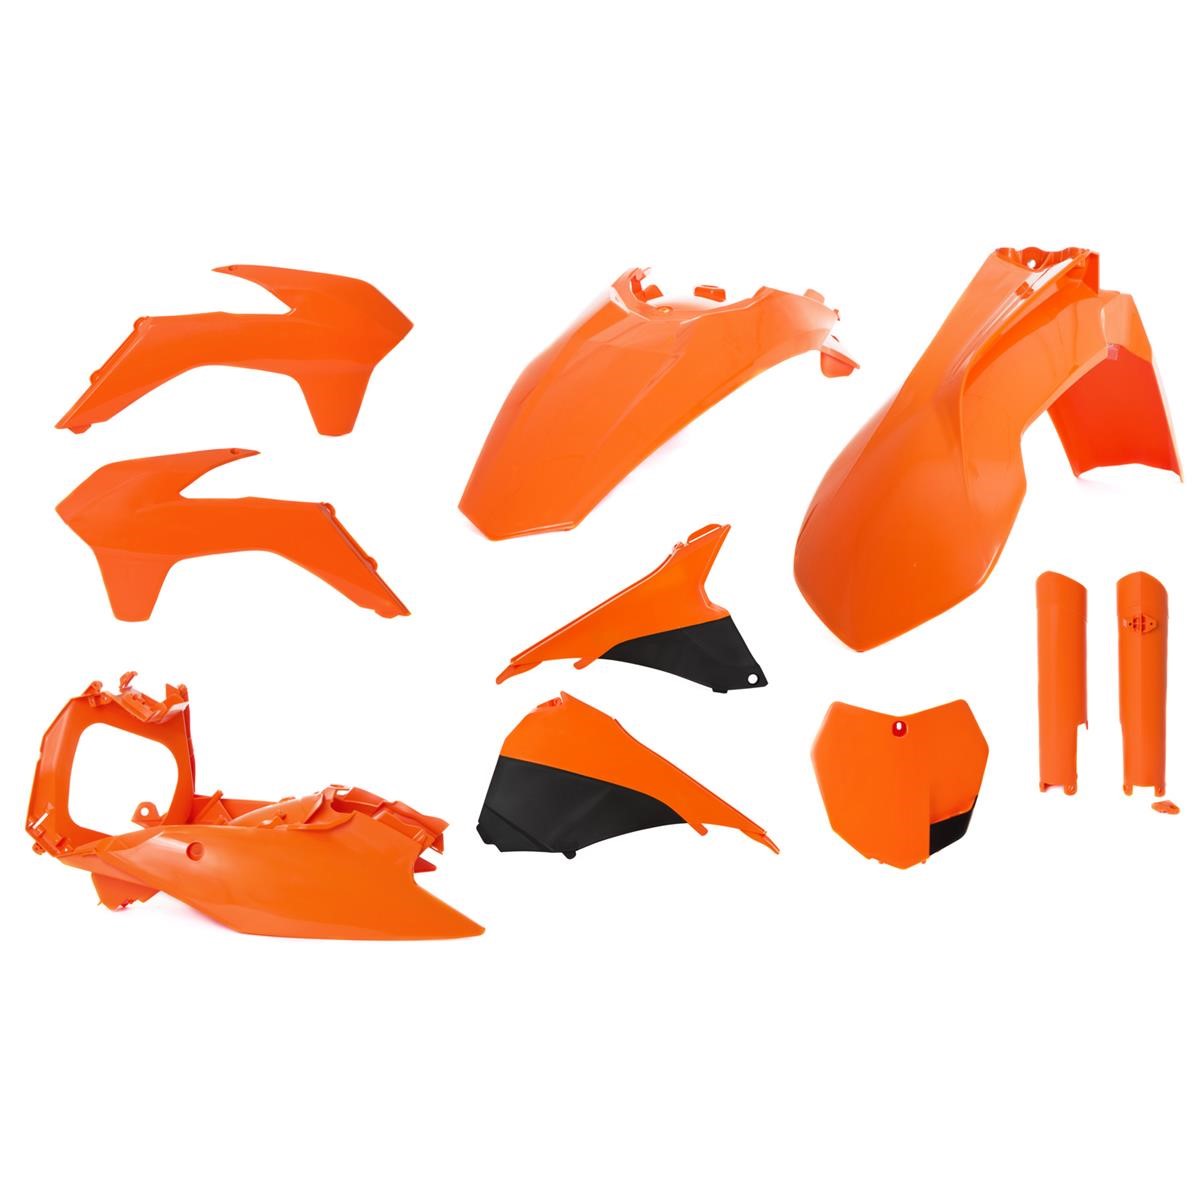 Acerbis Plastic Kit Full-Kit KTM SX 125/150/250 13-14 / SX-F 13-14, Orange